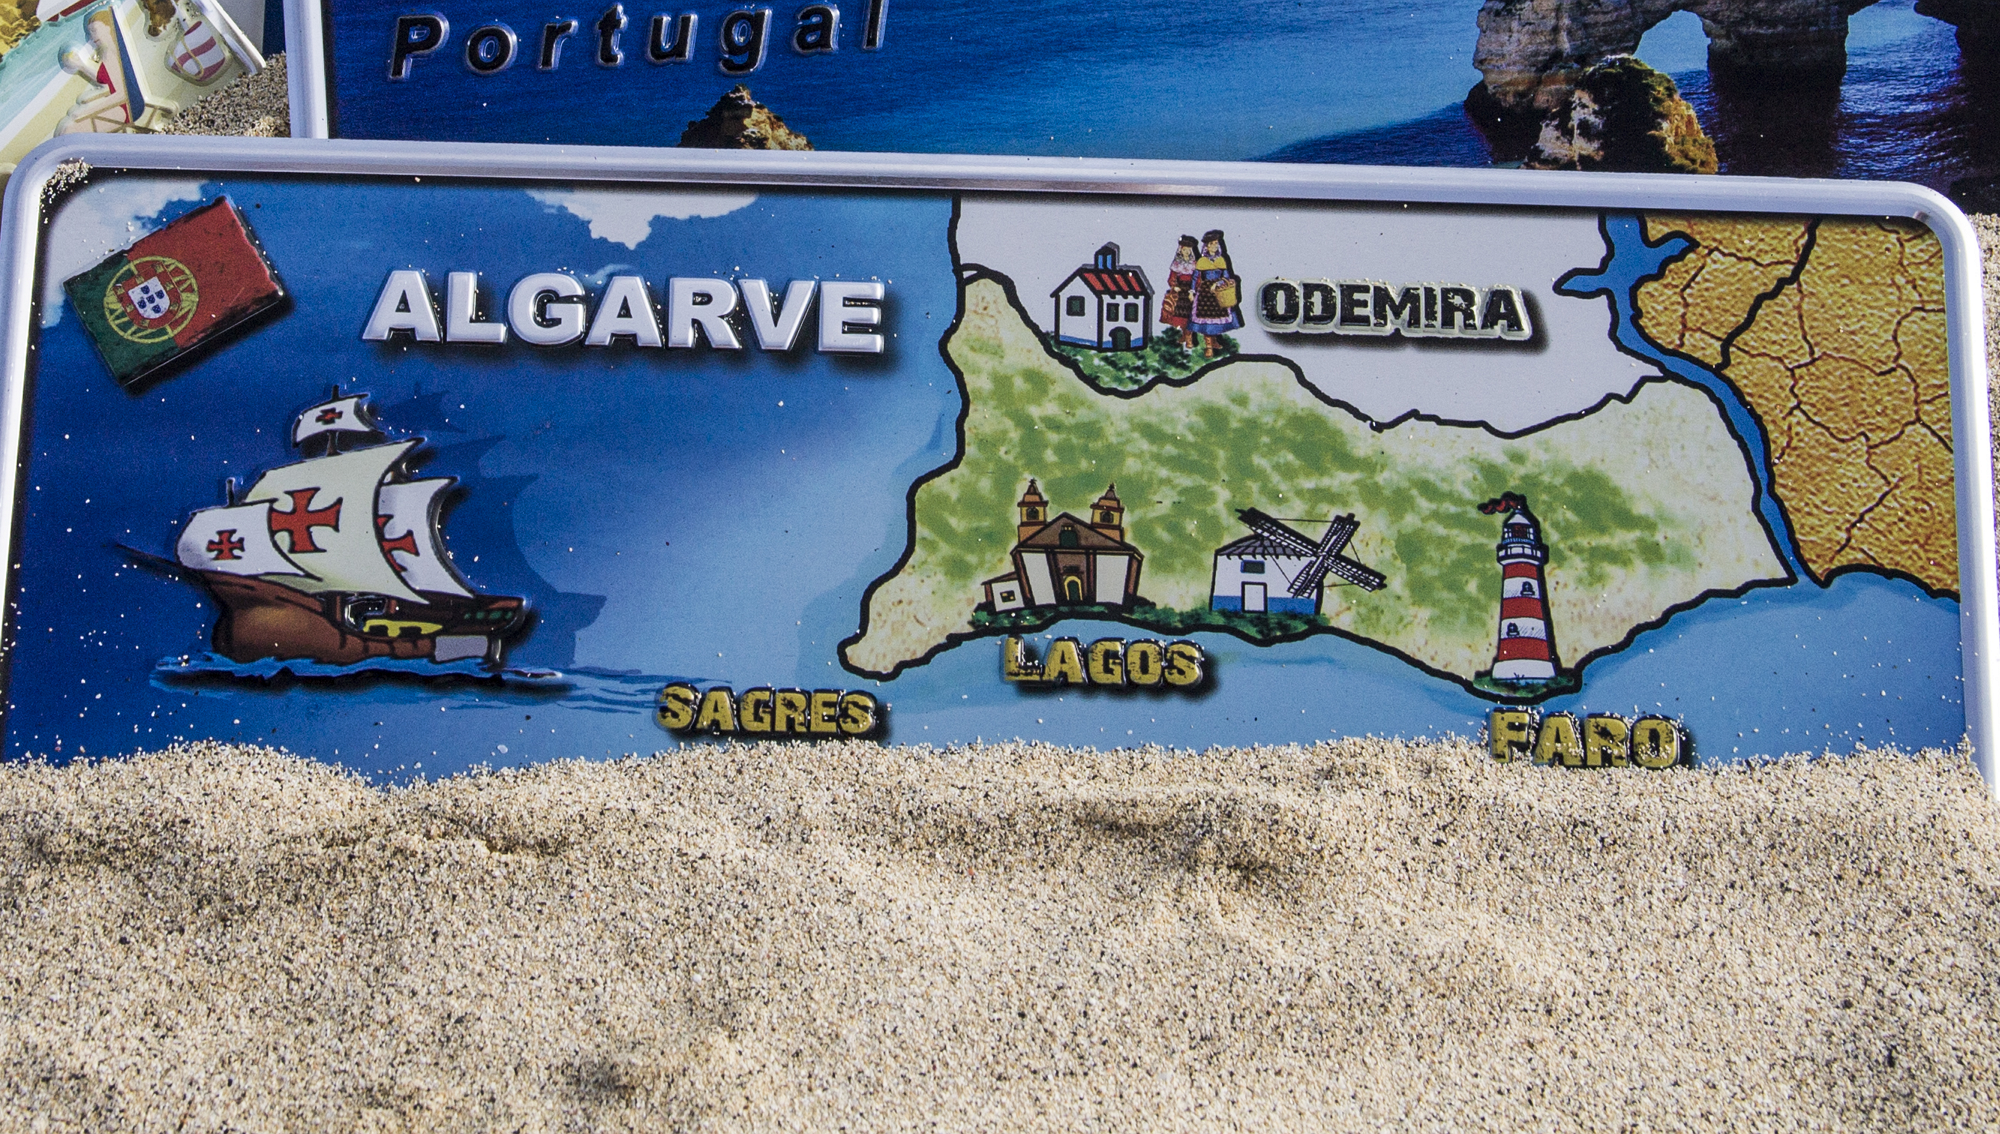 Map of Algarve